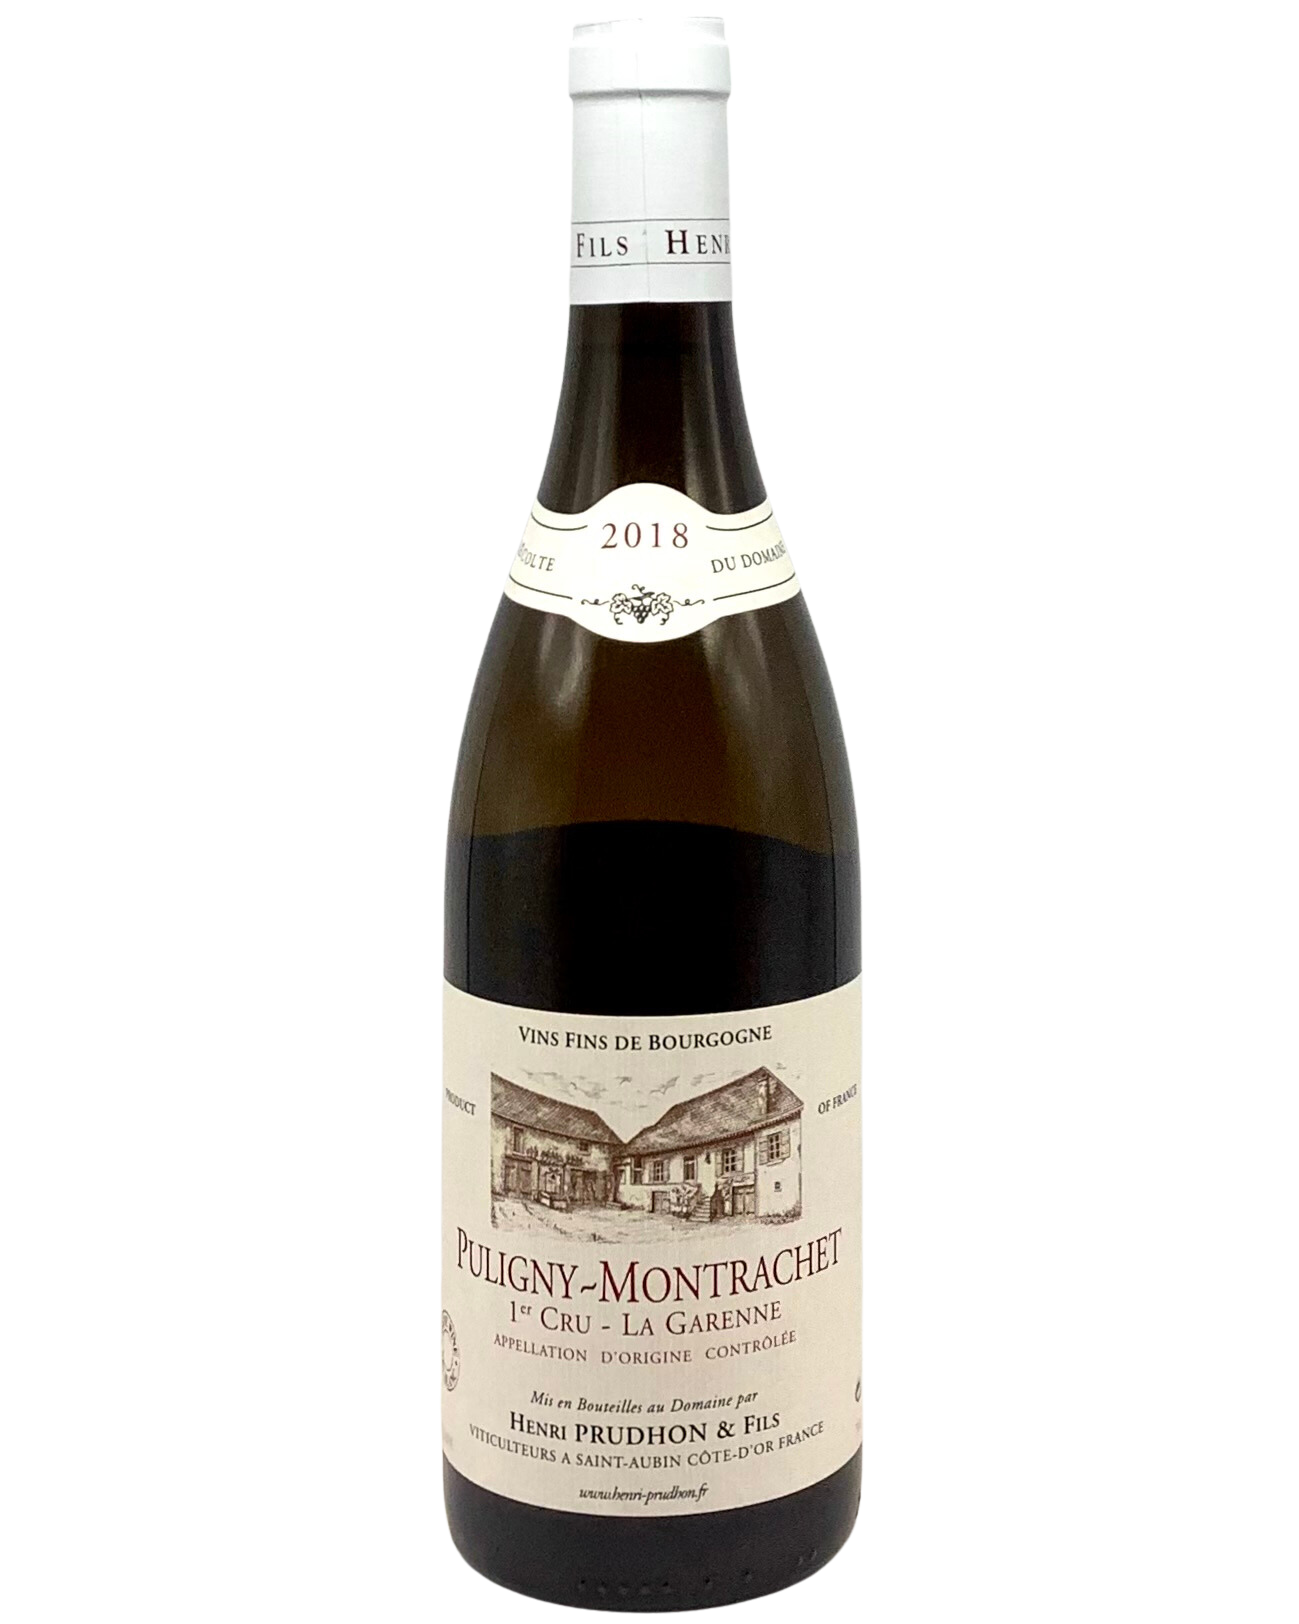 Henri Prudhon, Chardonnay, Puligny-Montrachet 1er Cru "La Garenne" Côte de Beaune, Burgundy, France 2018